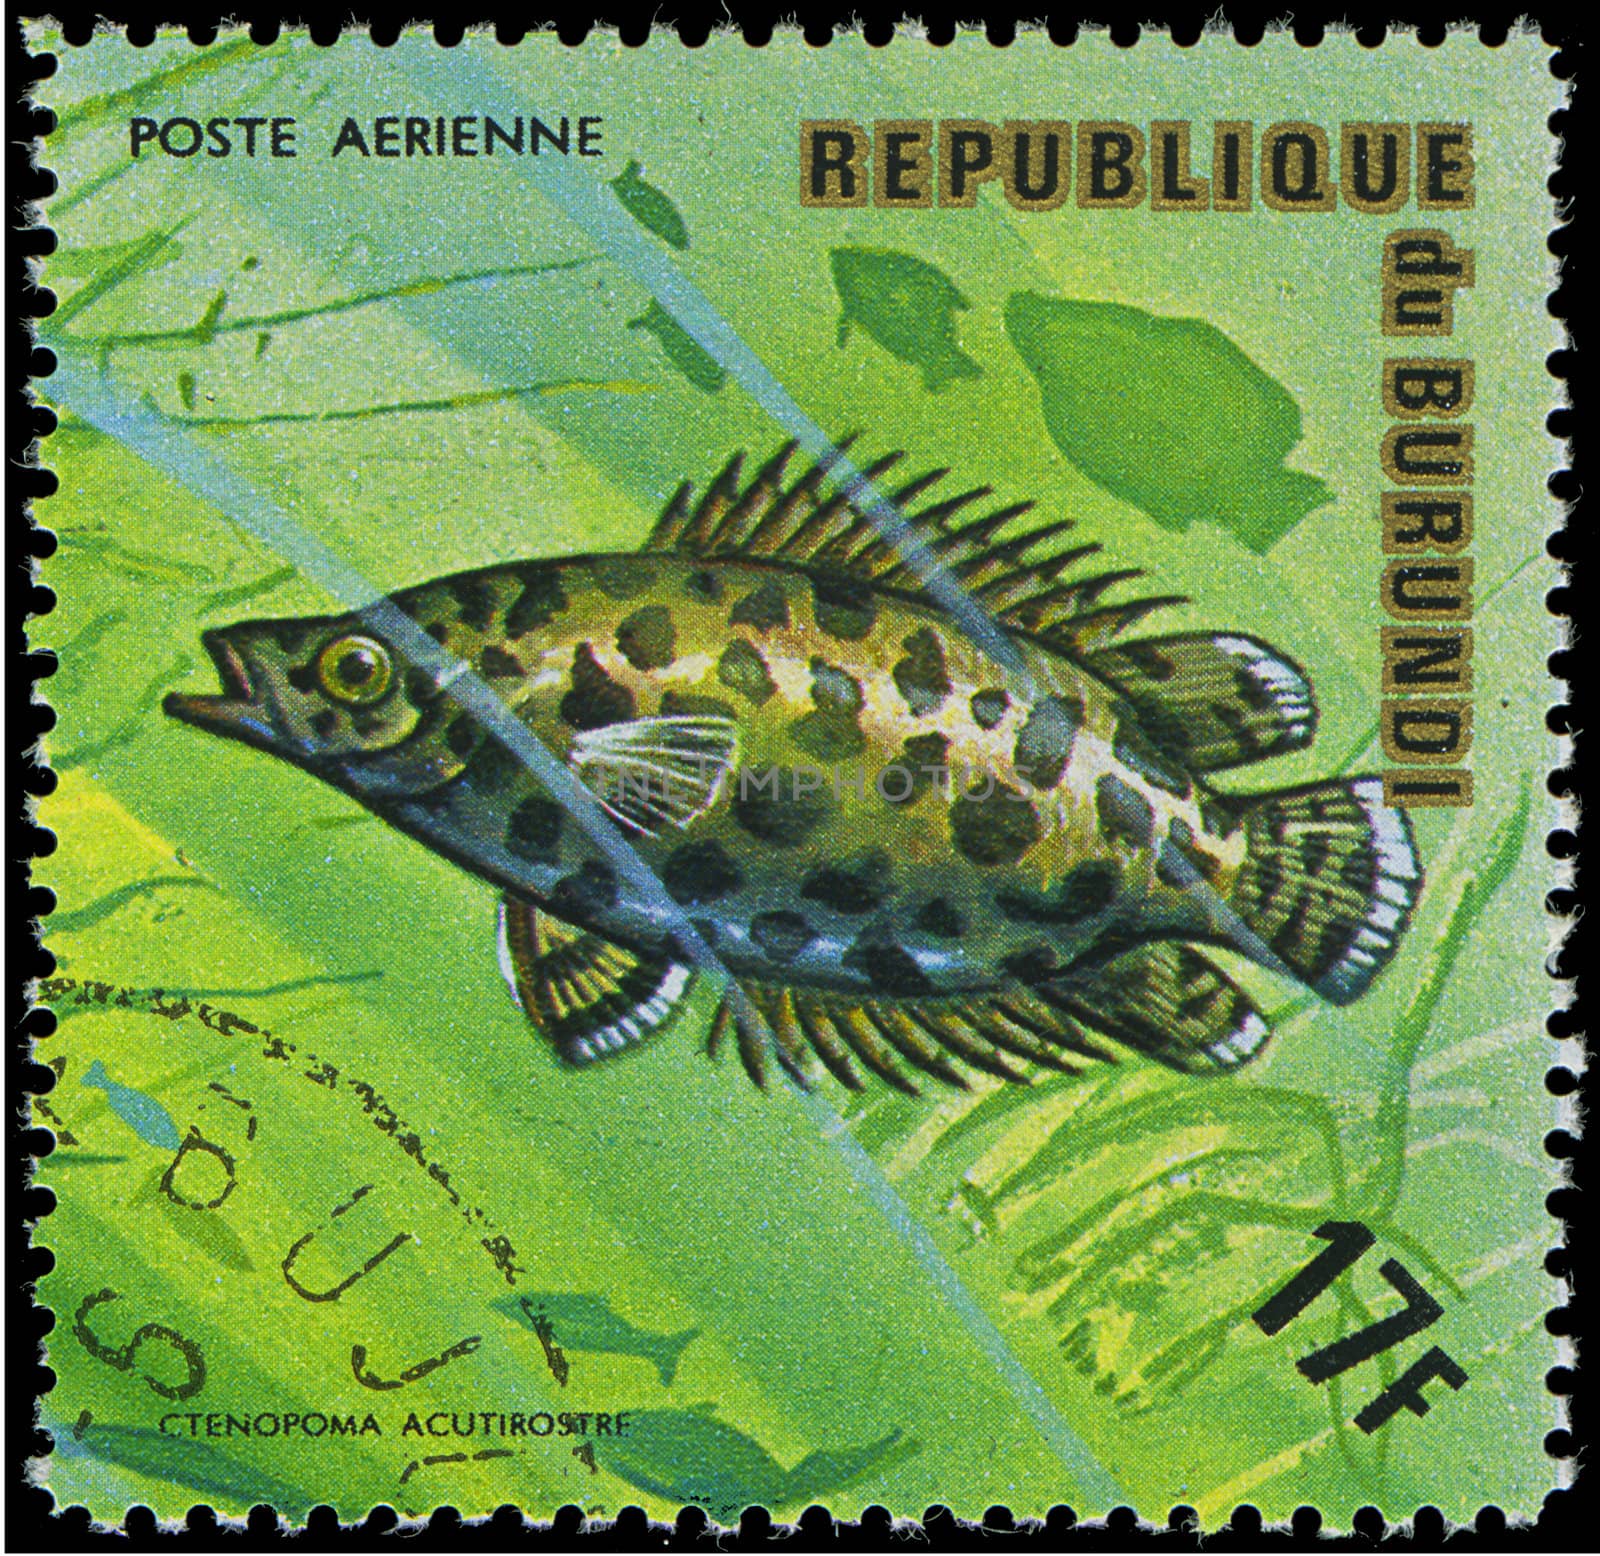 Republic of Burundi, - CIRCA 1975: A stamp printed by Burundi shows the fish Ctenopoma acutirostre, circa 1975 by Zhukow